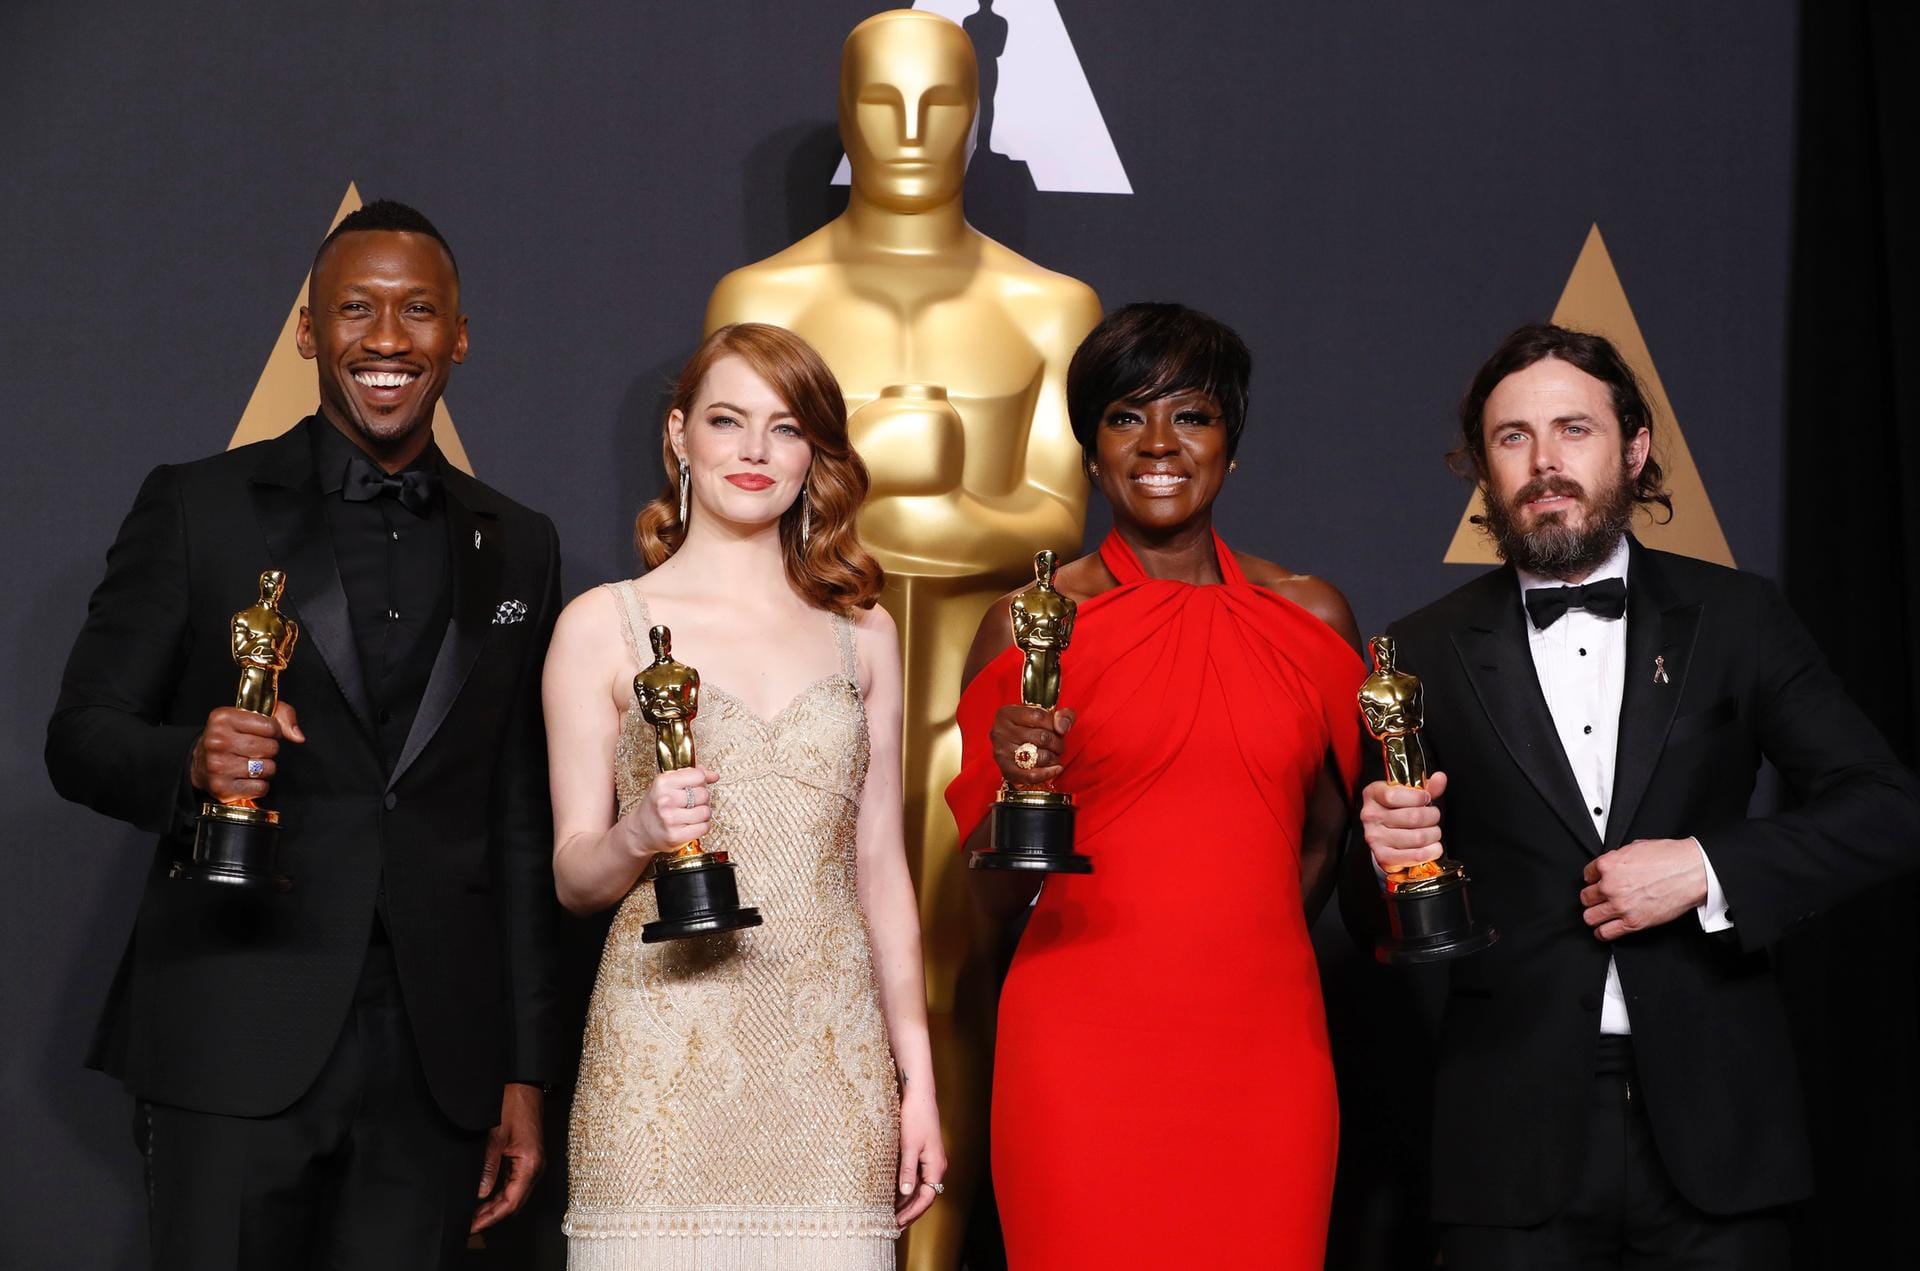 Strahlend vor Glück- die vier Gewinner der diesjährigen Oscarnacht